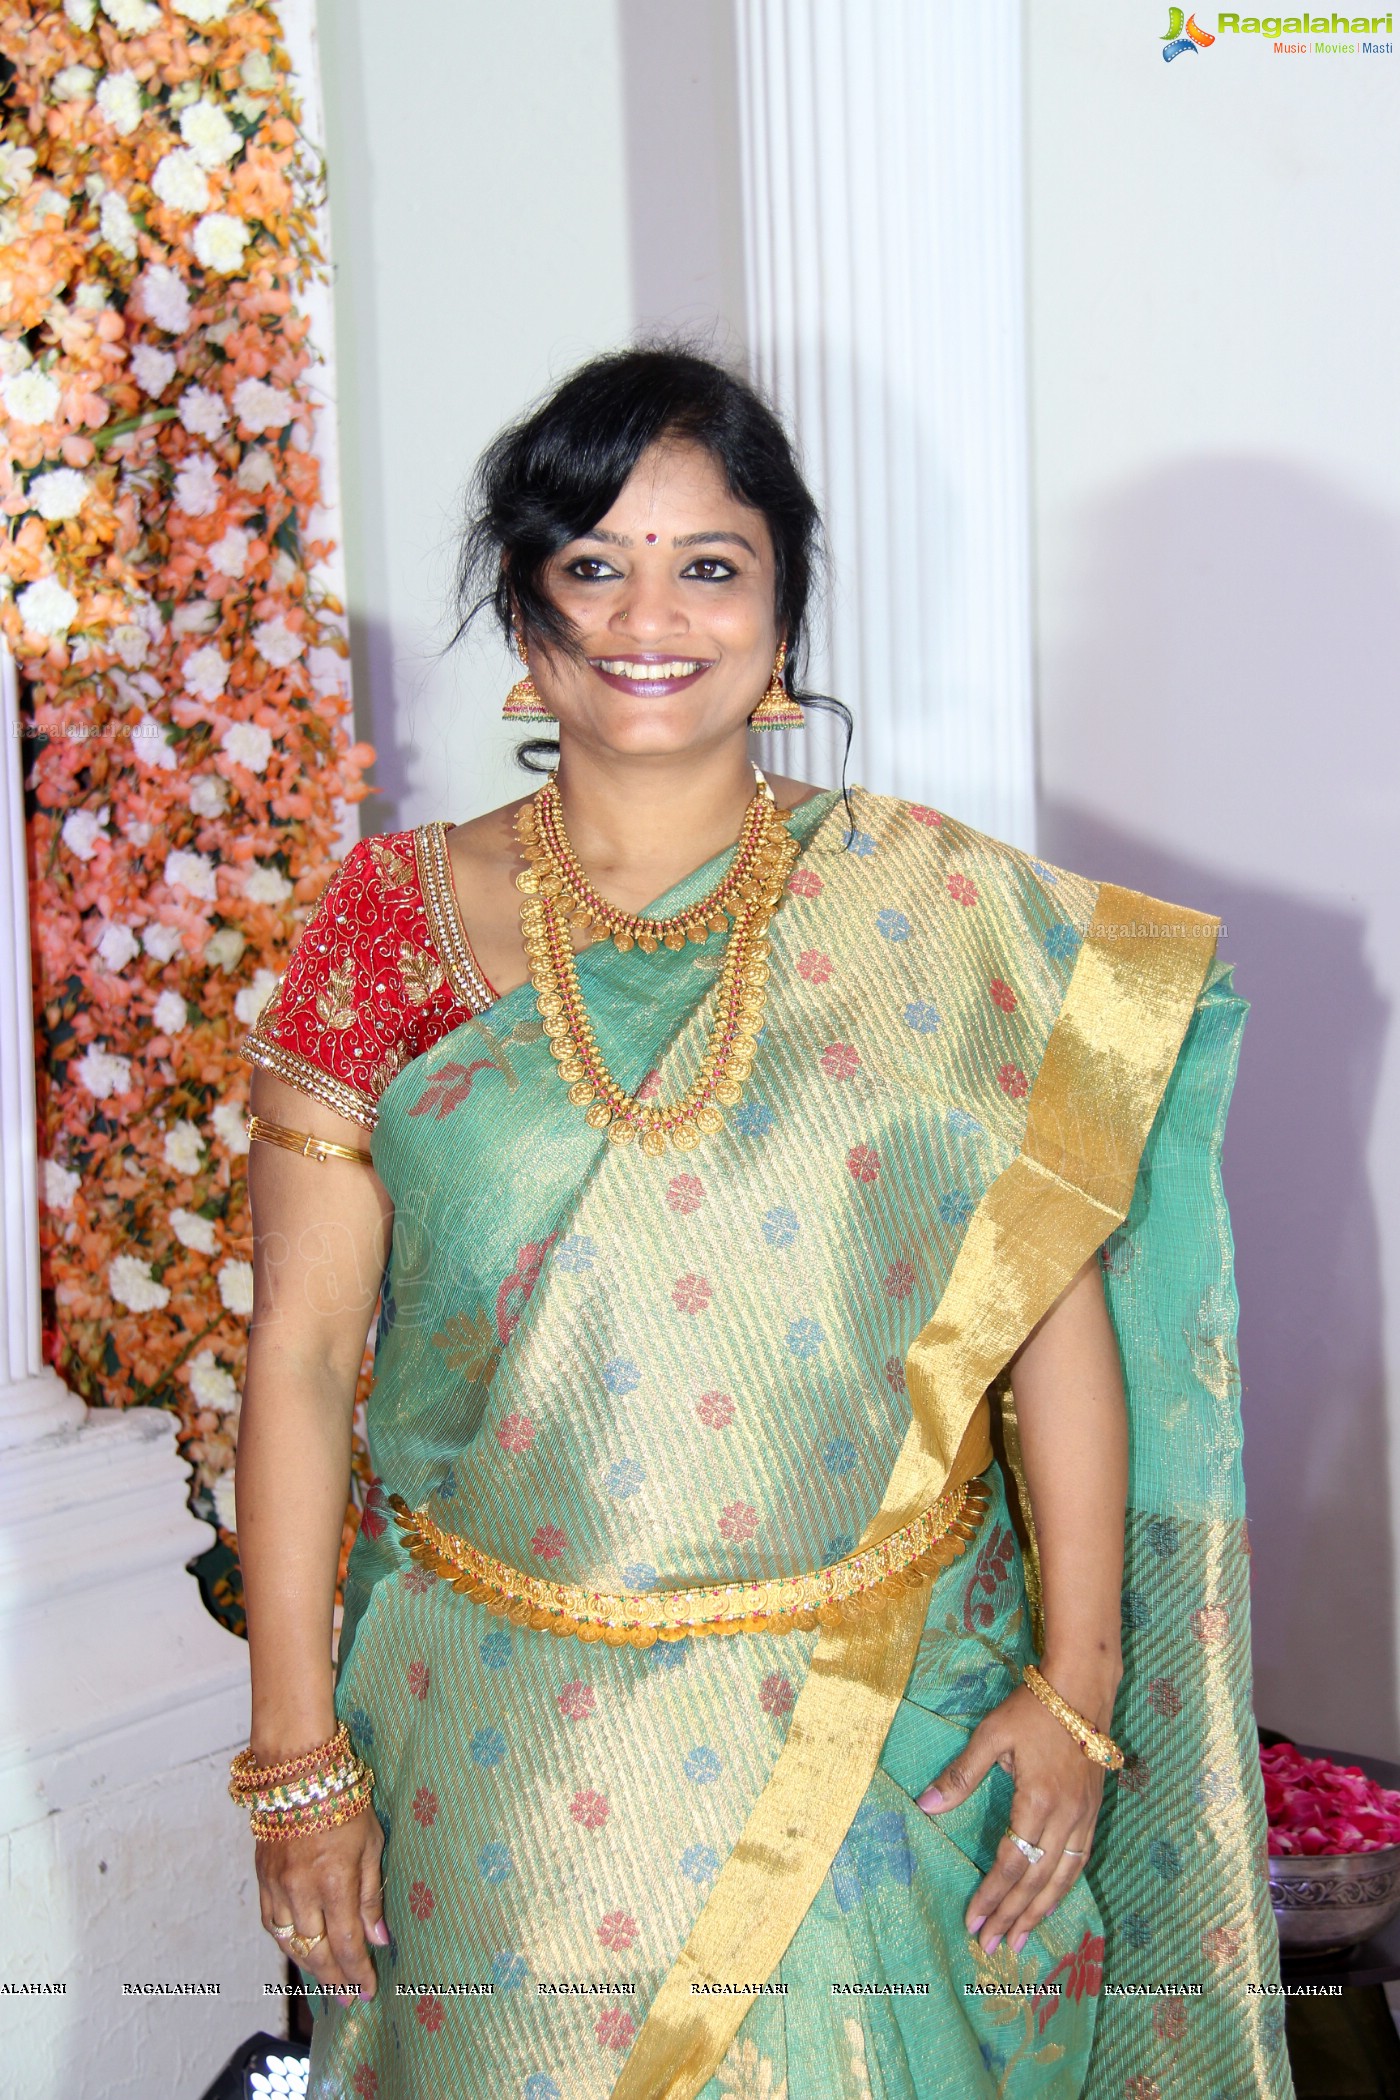 Lakshmi Priyanka-Shravan Kumar's Engagement